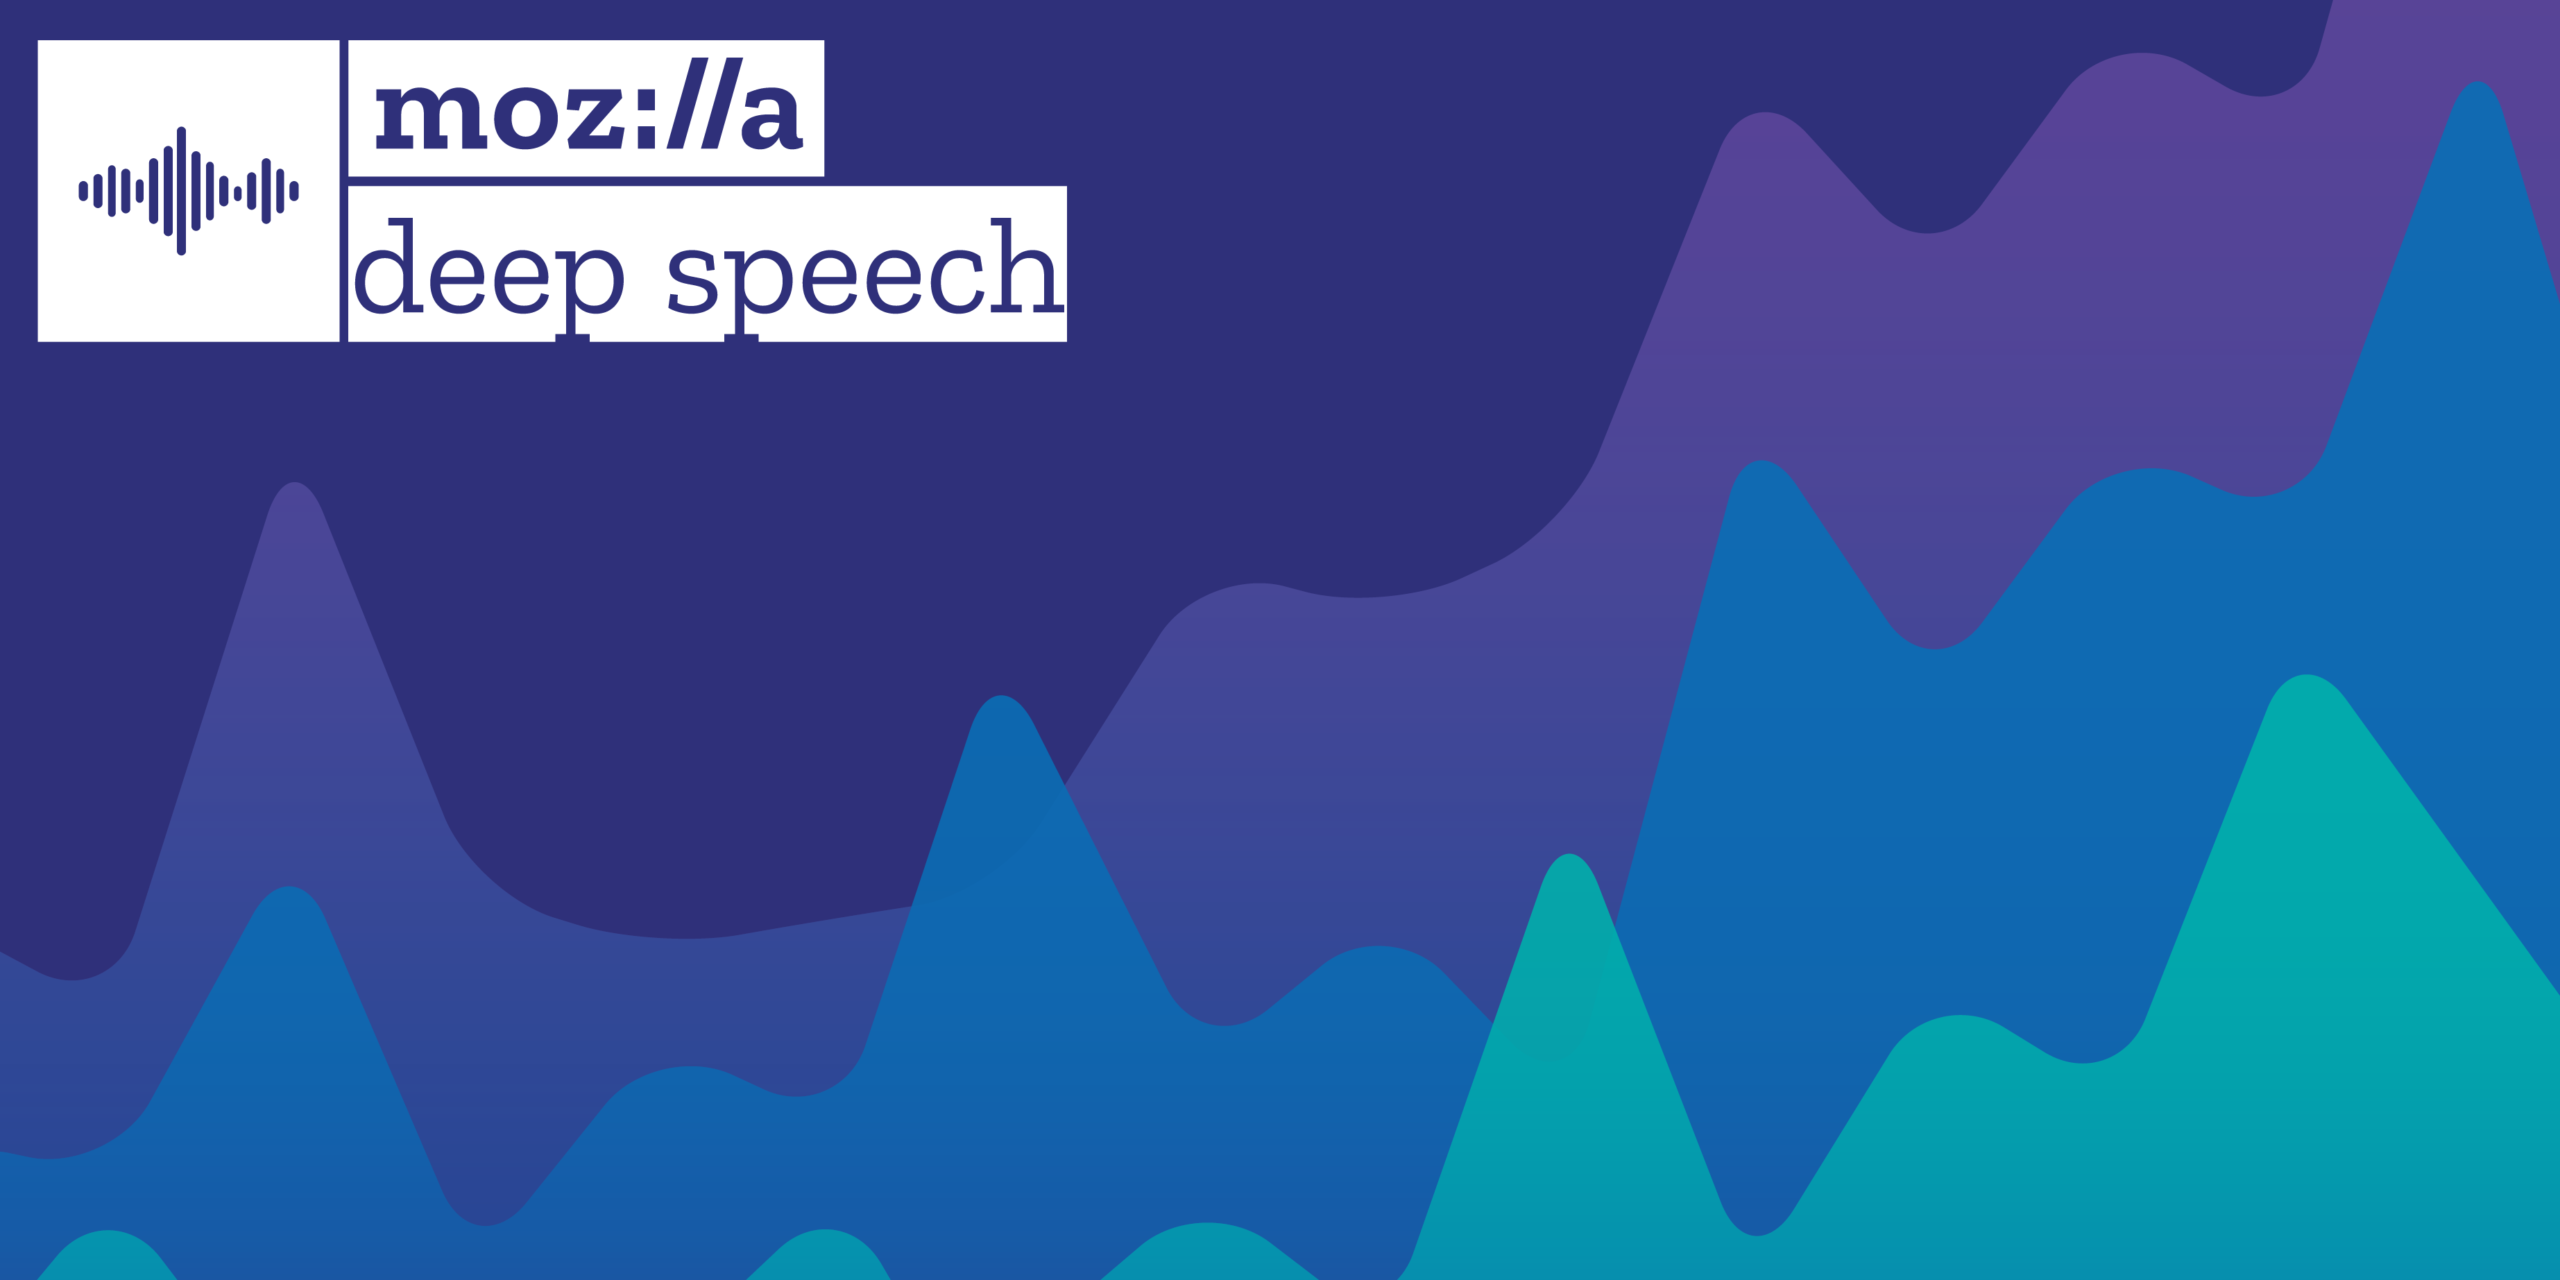 Mesmo com demissões, Mozilla lança atualização do DeepSpeech